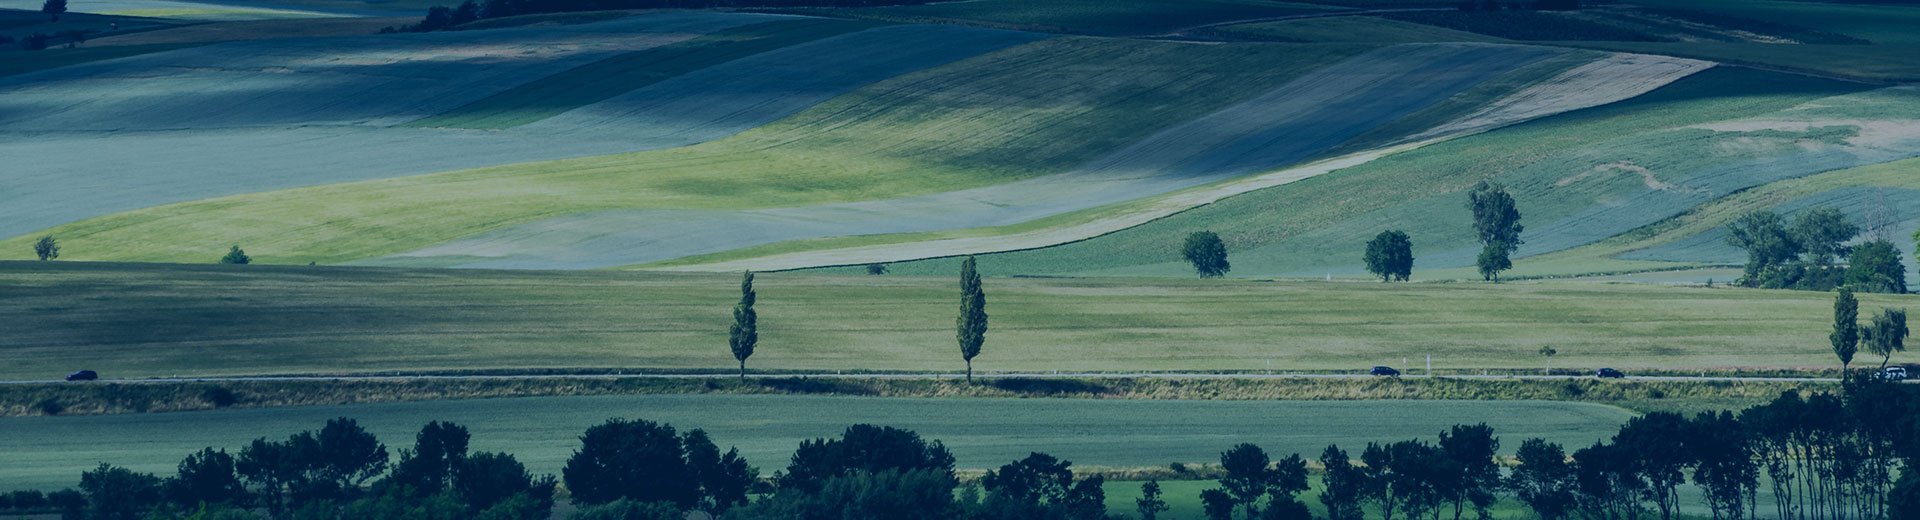 Green fields image